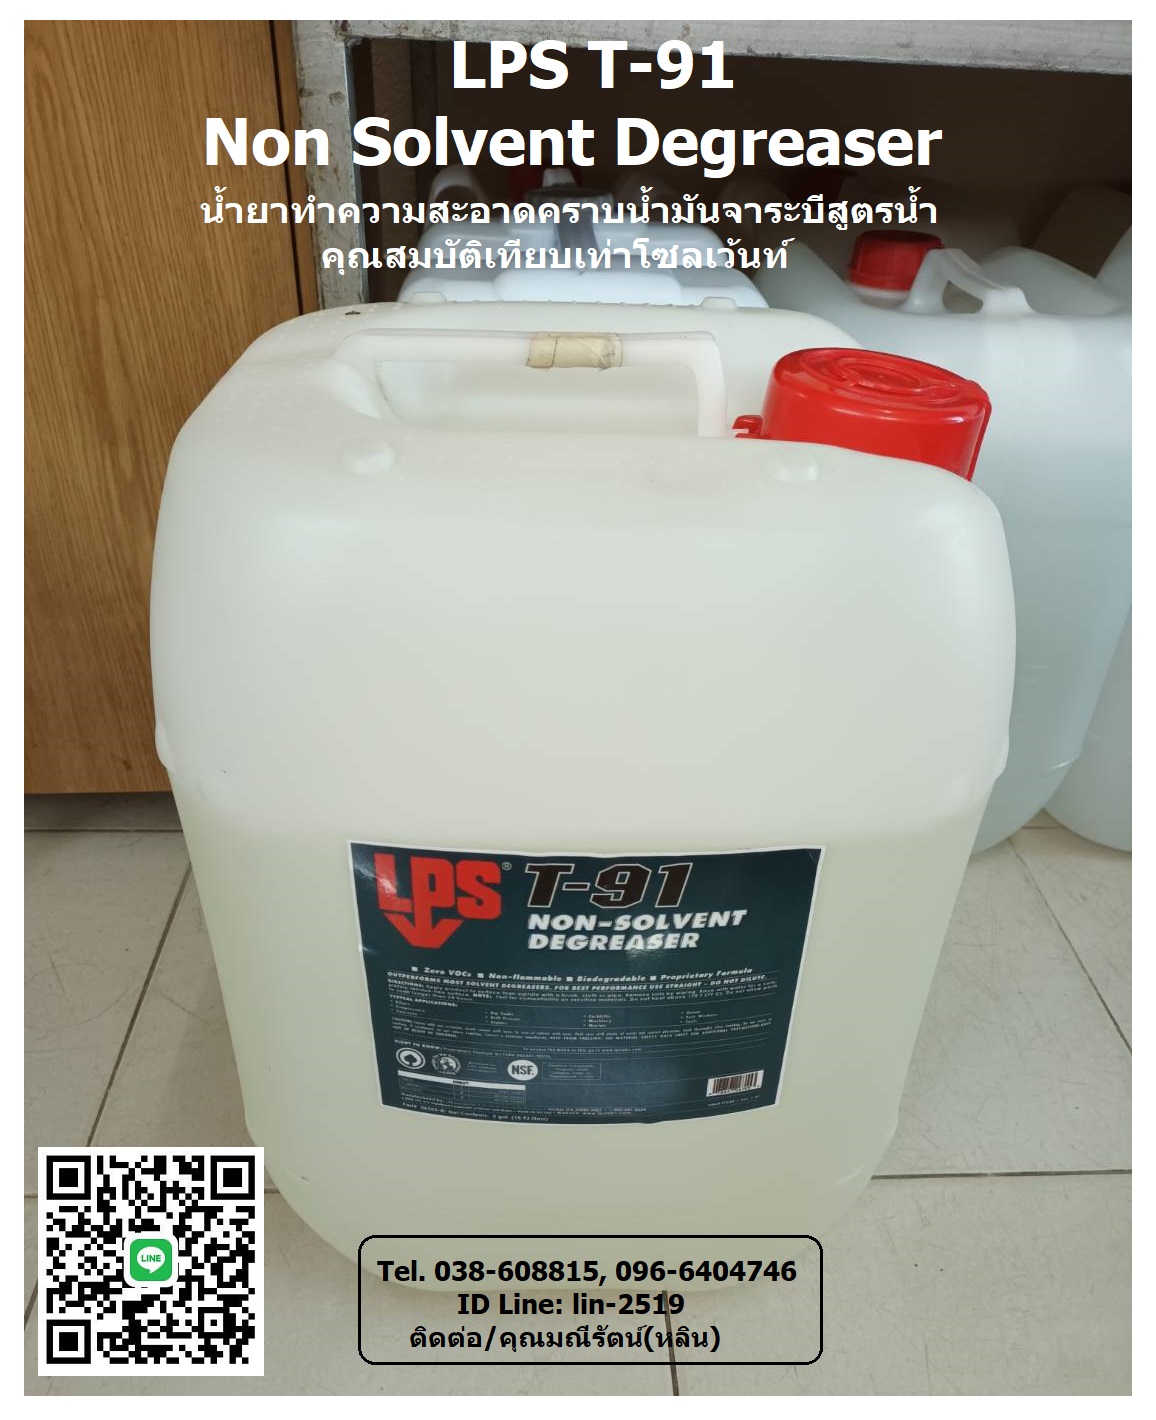 รูปภาพ LPS T-91 Non-Solvent Degreaser น้ำยาทำความสะอาดคราบน้ำมัน จาระบีเอนกประสงค์ (สูตรน้ำ) มีประสิทธิภาพเทียบเท่าโซเว้นท์ ย่อยสลายได้ตามธรรมชาติ